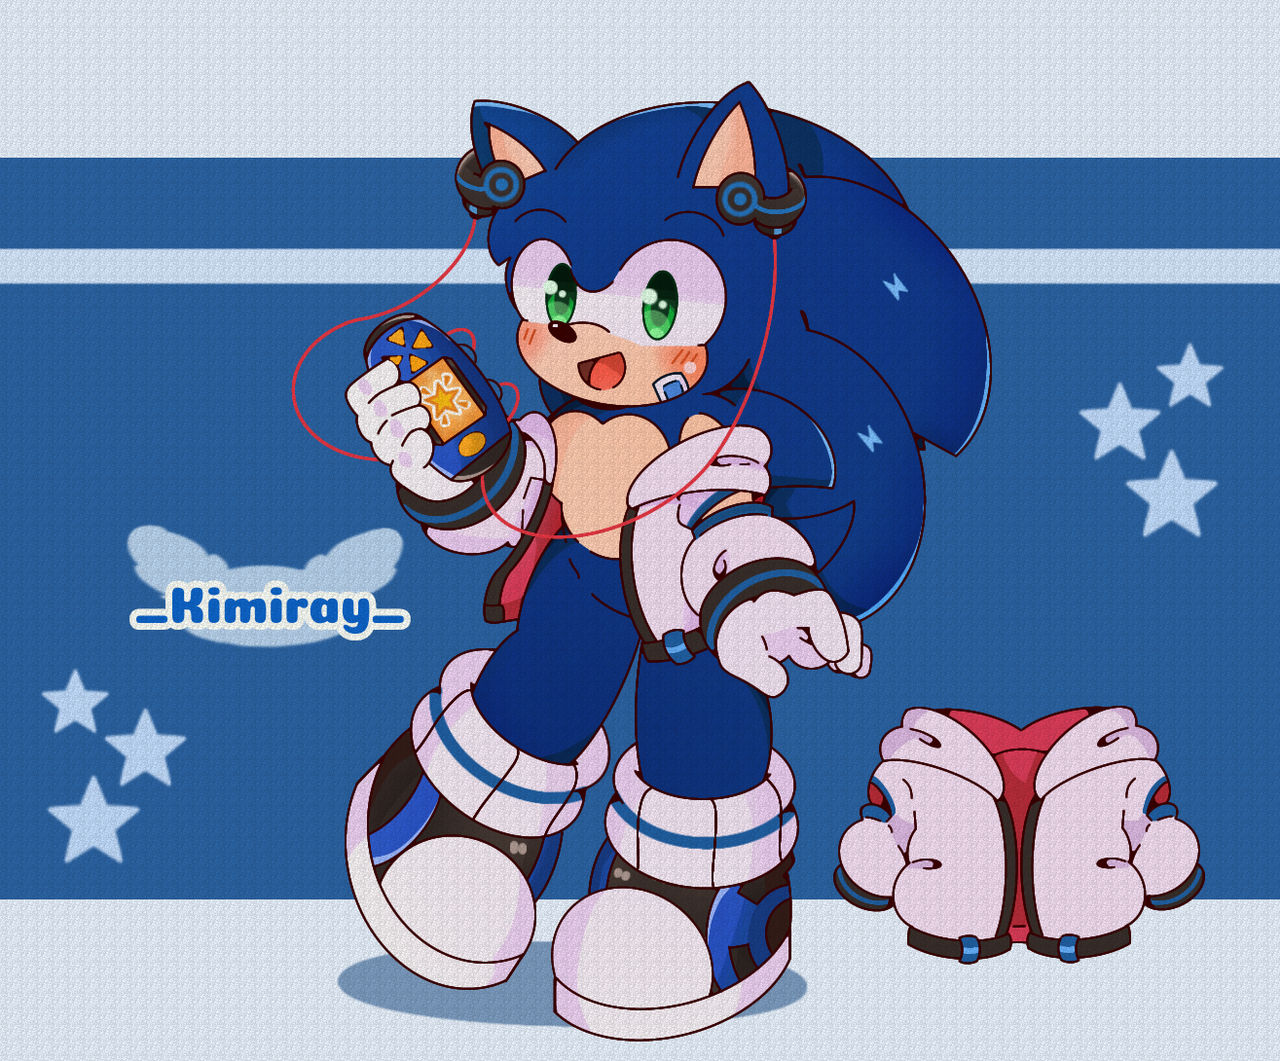 Sonic Gamer